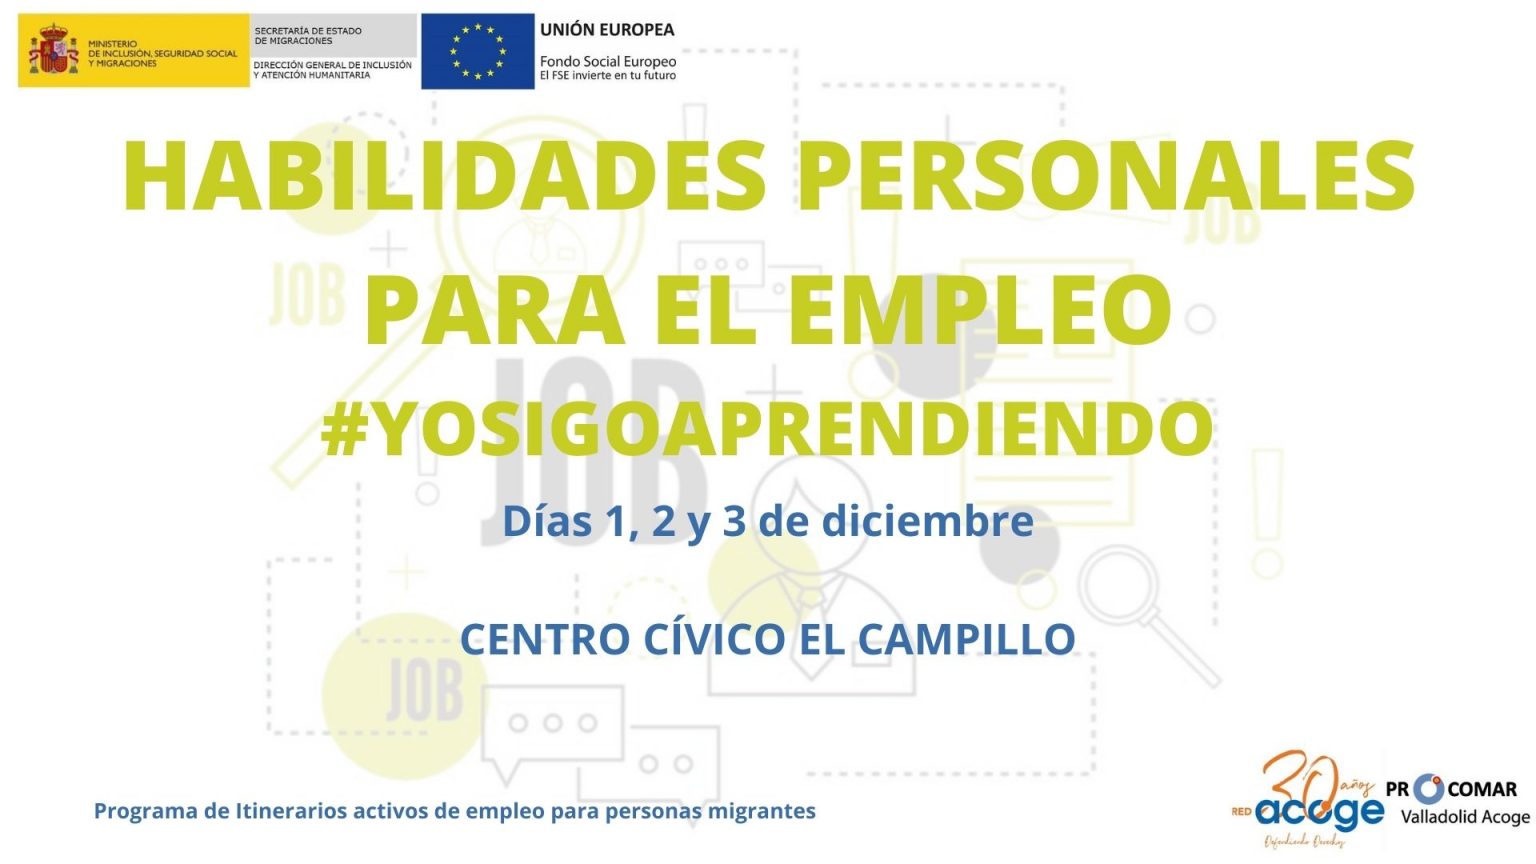 Habilidades Personales Para El Empleo Procomar Valladolid Acoge